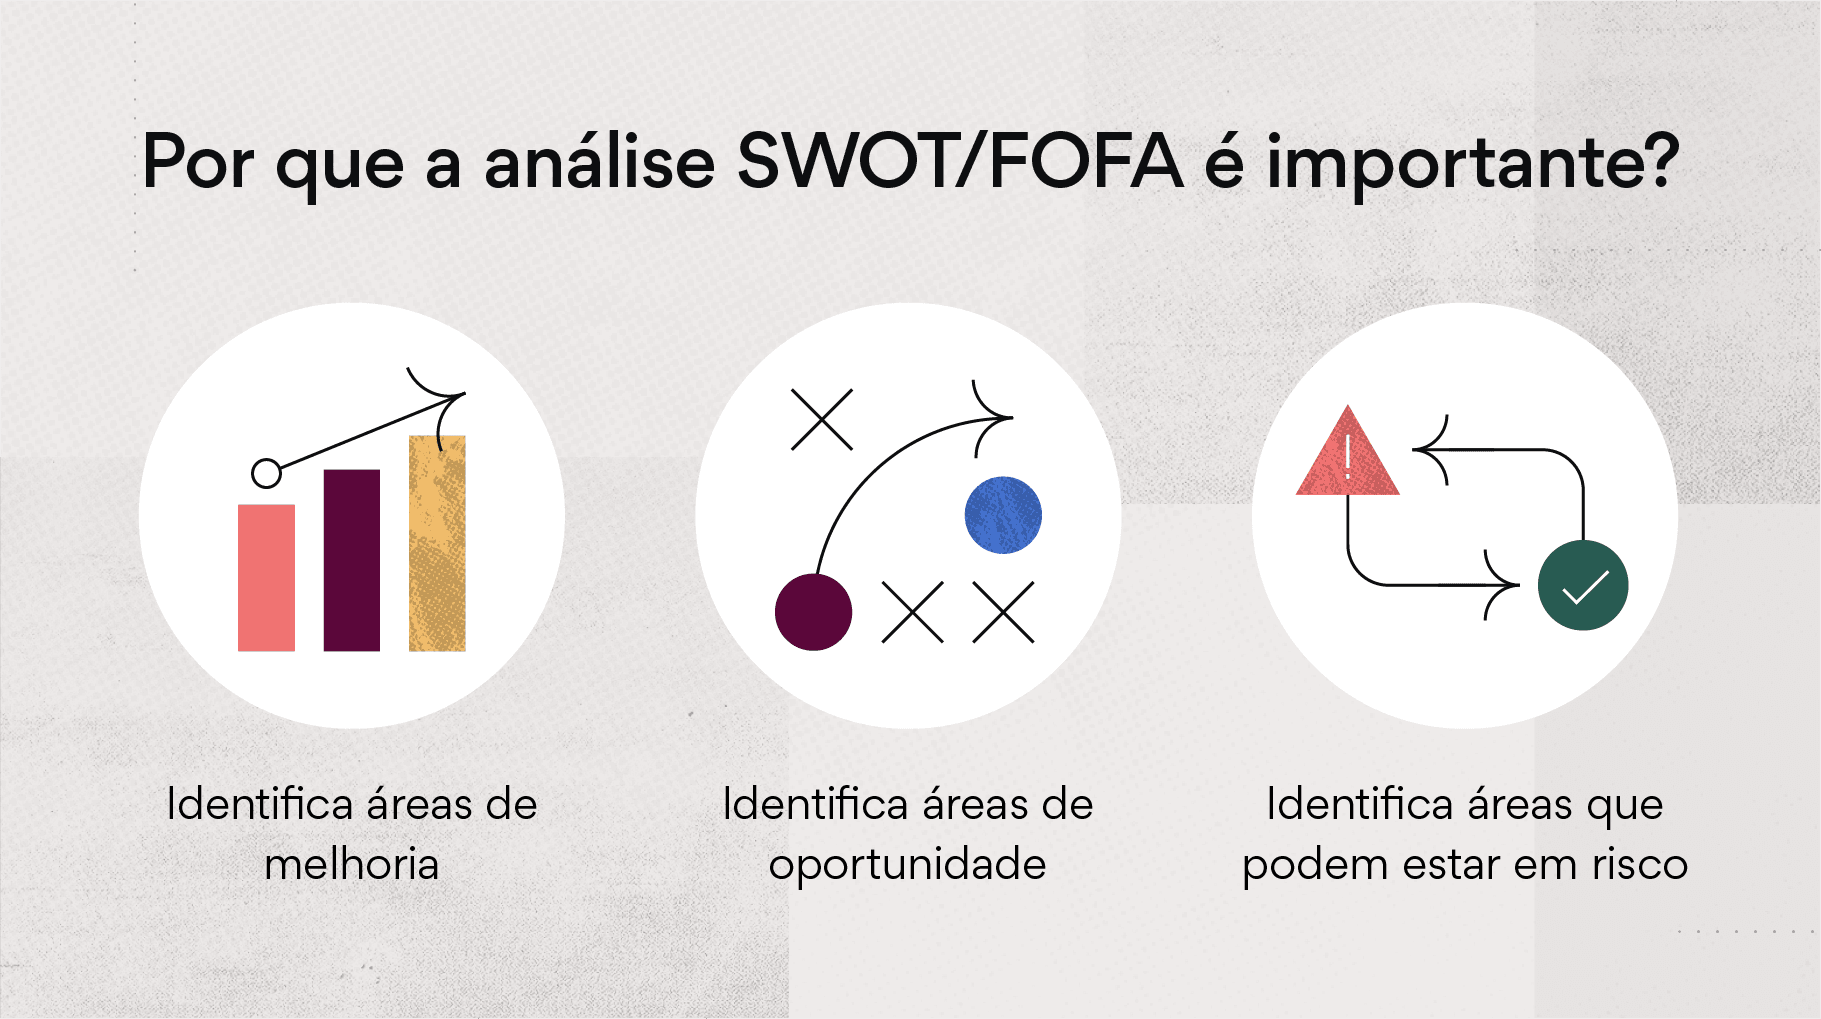 Por que uma análise SWOT é importante?